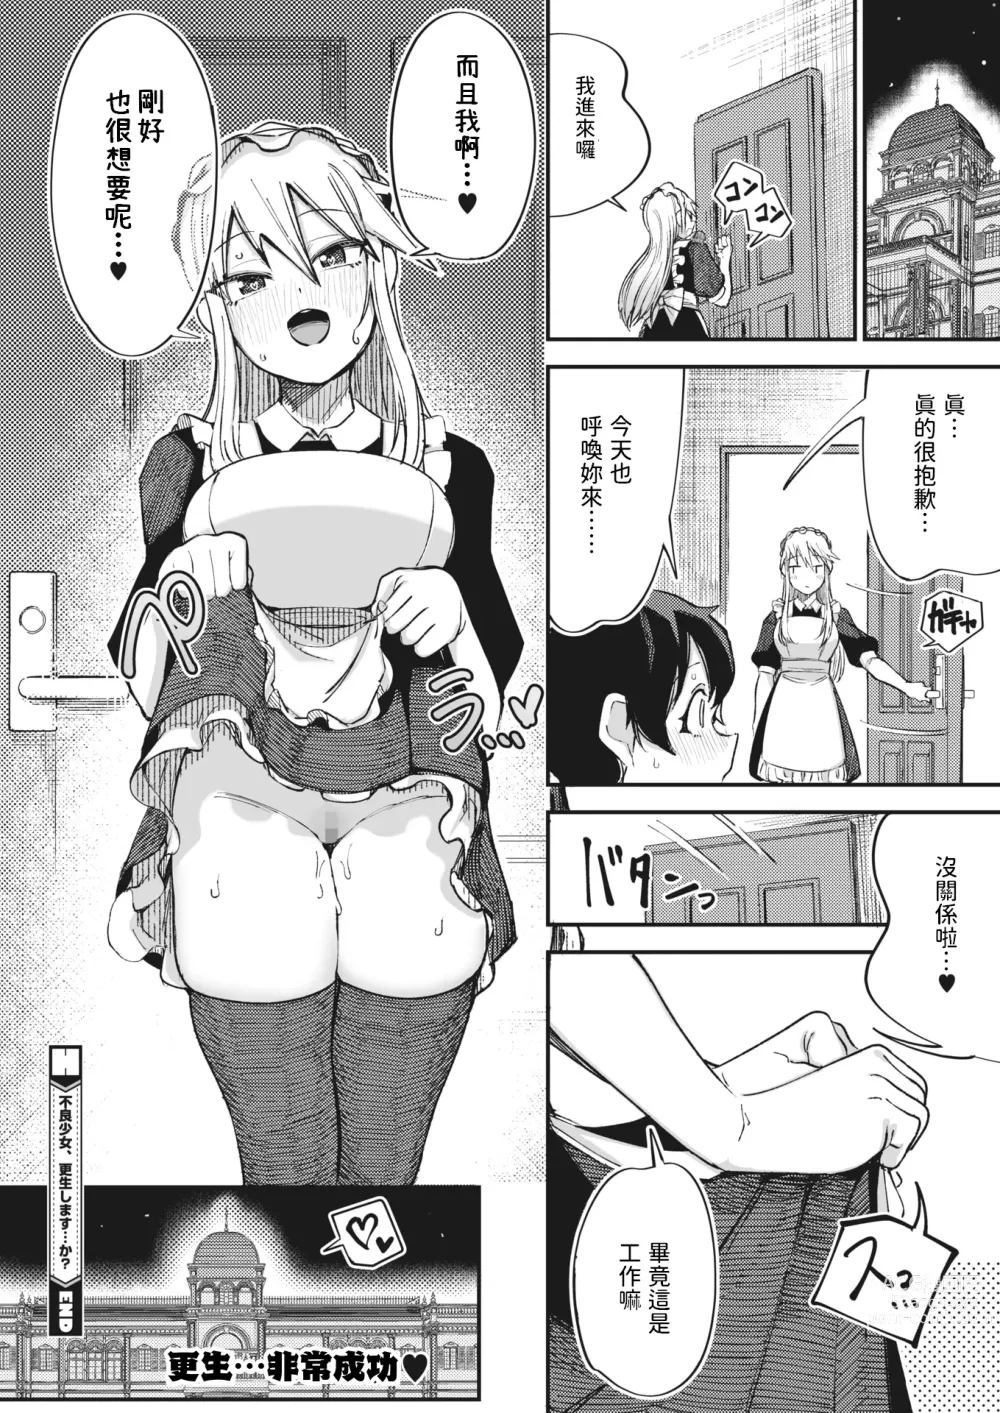 Page 26 of manga Furyou Shoujo,   Kousei shimasu... ka!?